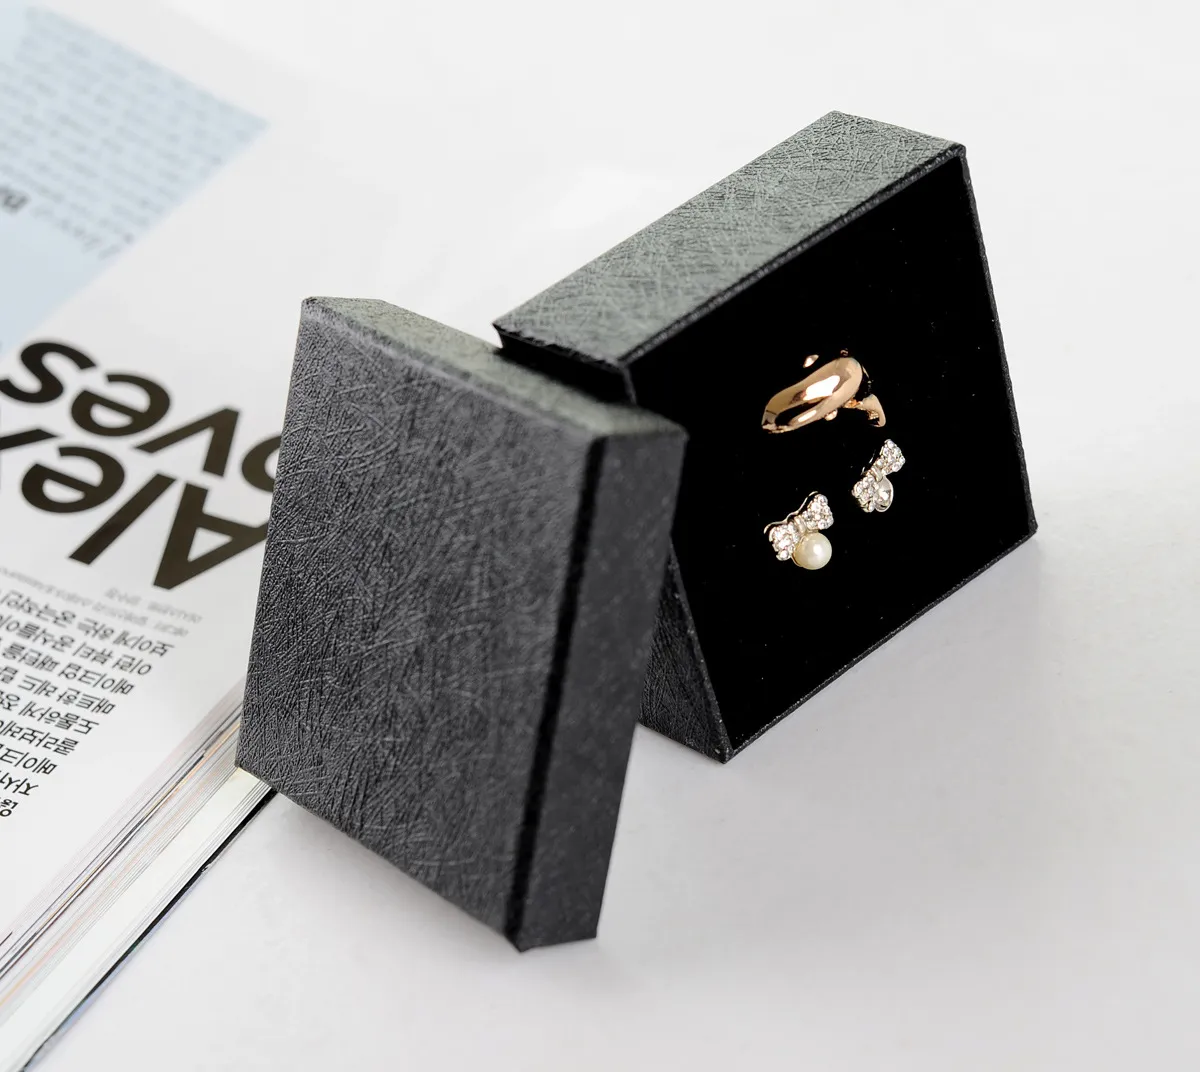 Eenvoudige zeven 6 36 32 3 cm klassieke zwarte sieraden ringdoos speciaal papier armband draagdoos festival hanger display met spons338N